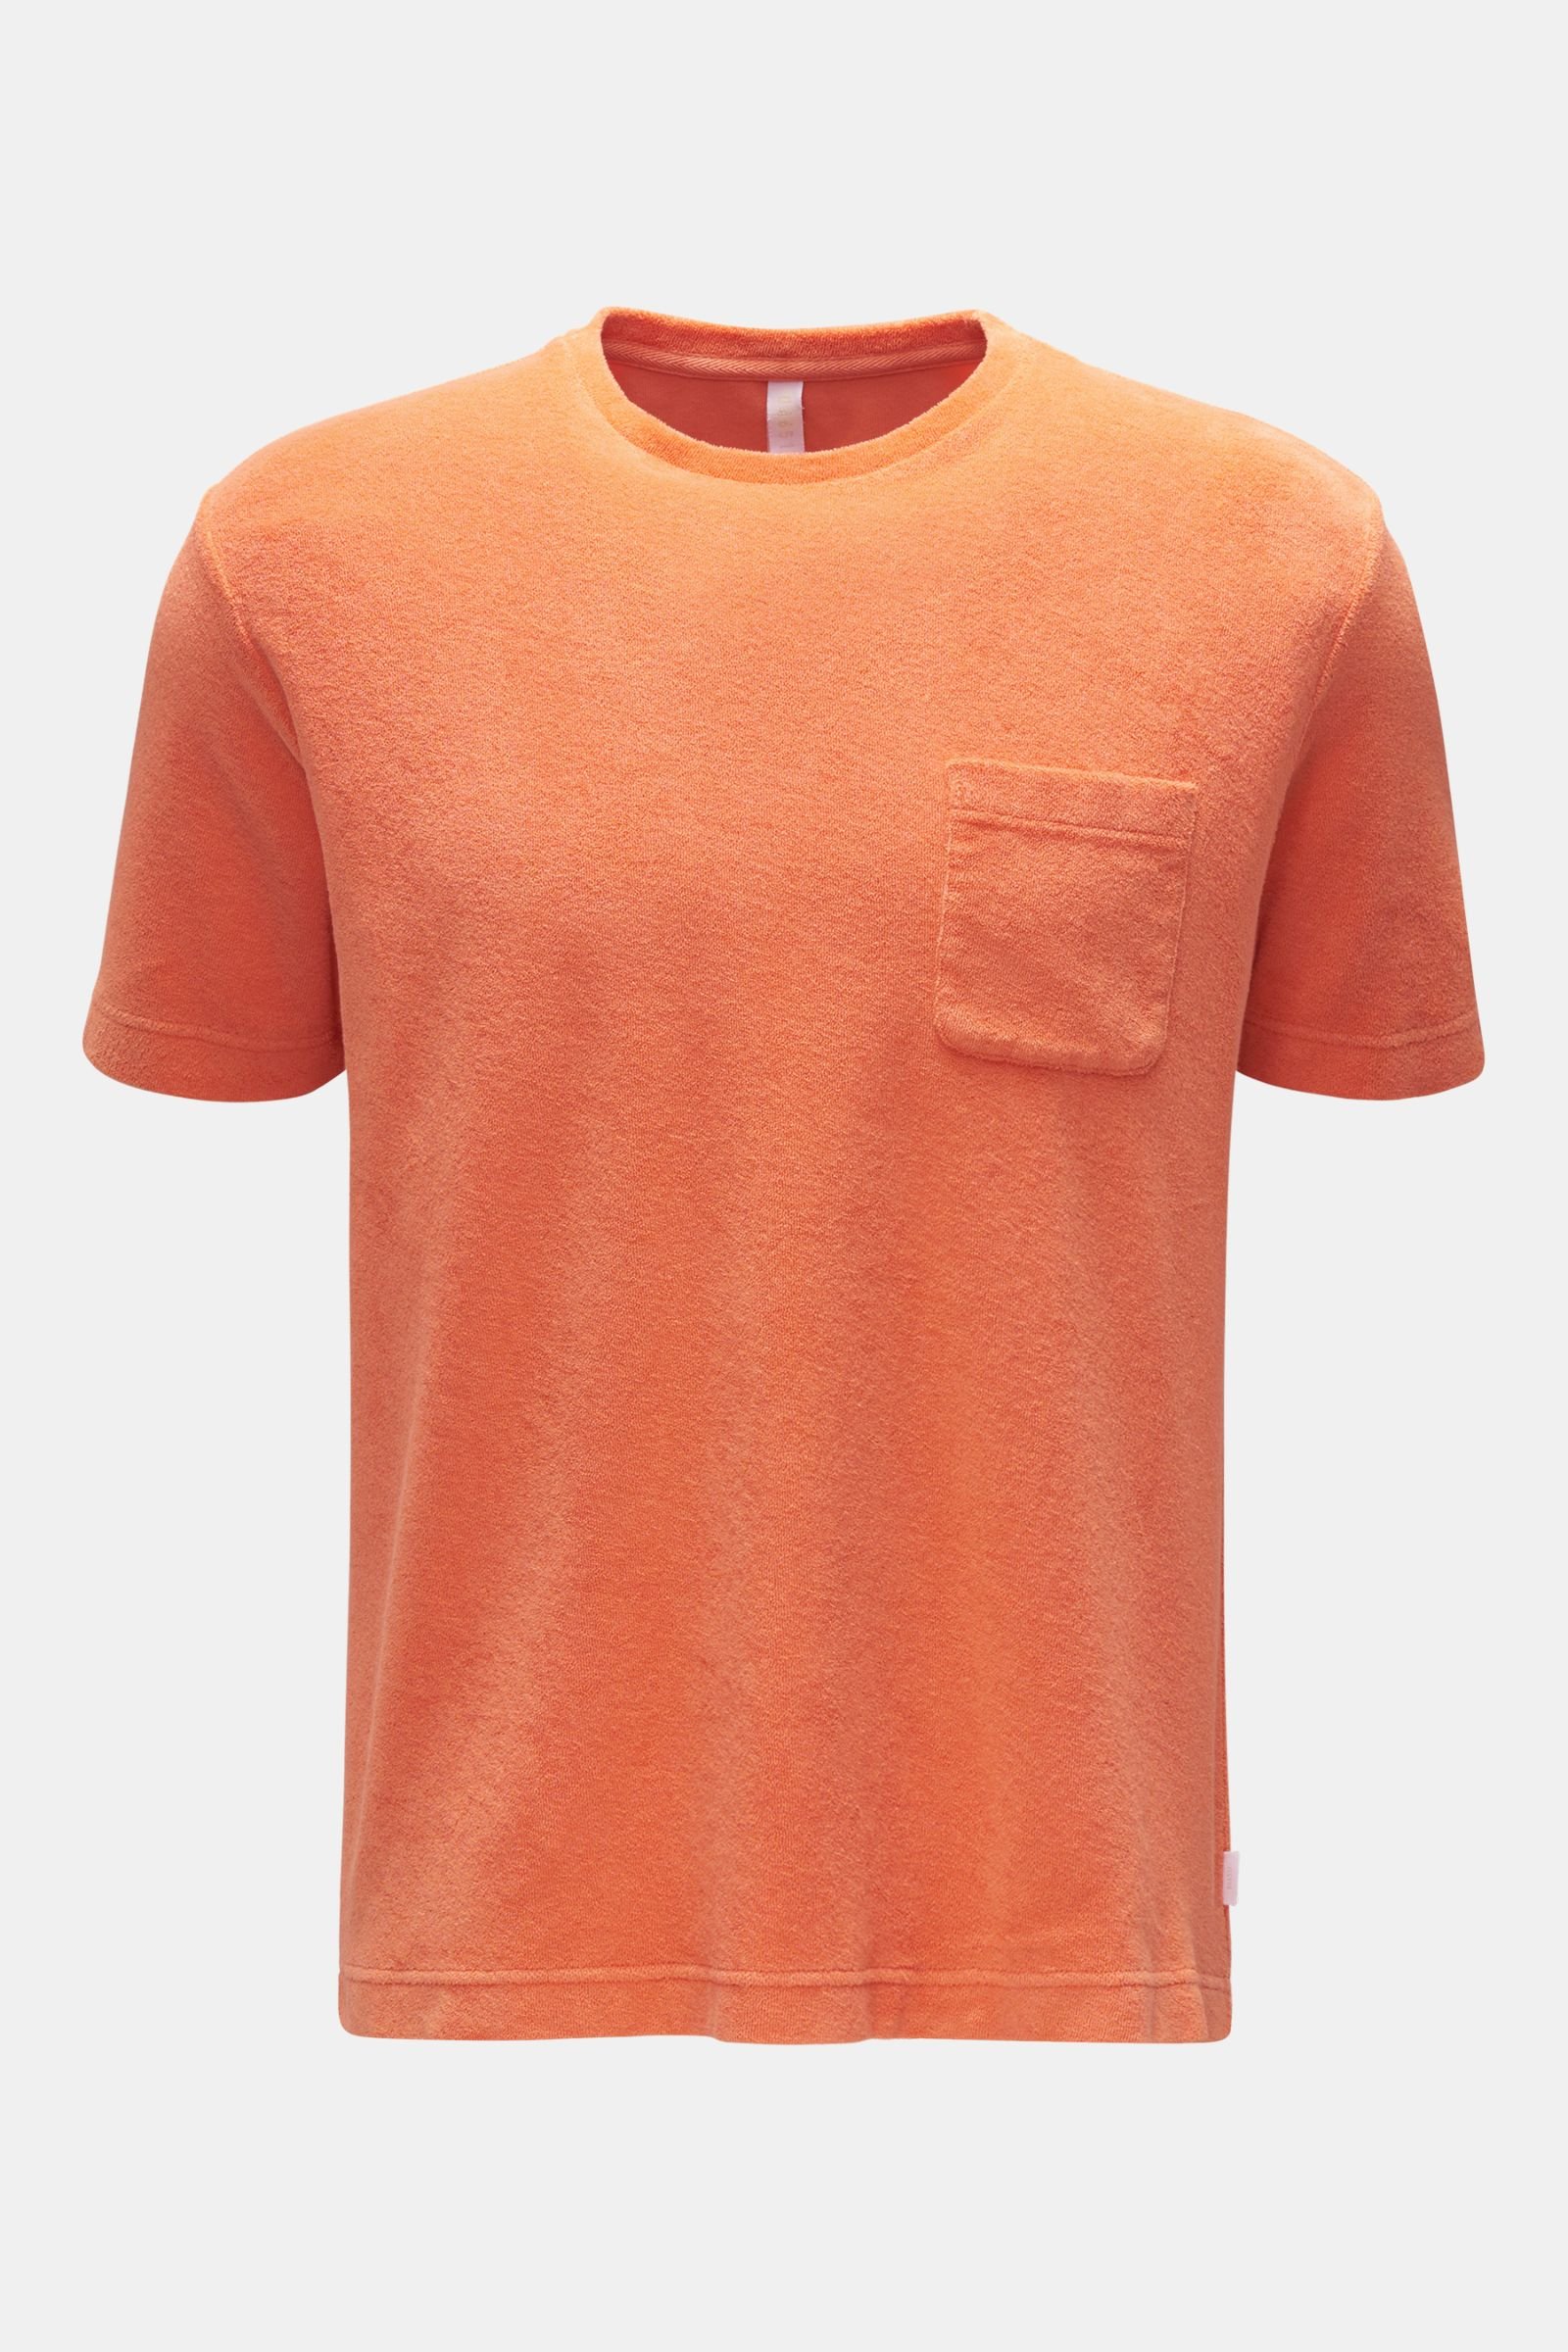 Terry crew neck T-shirt 'Terry Tee' orange